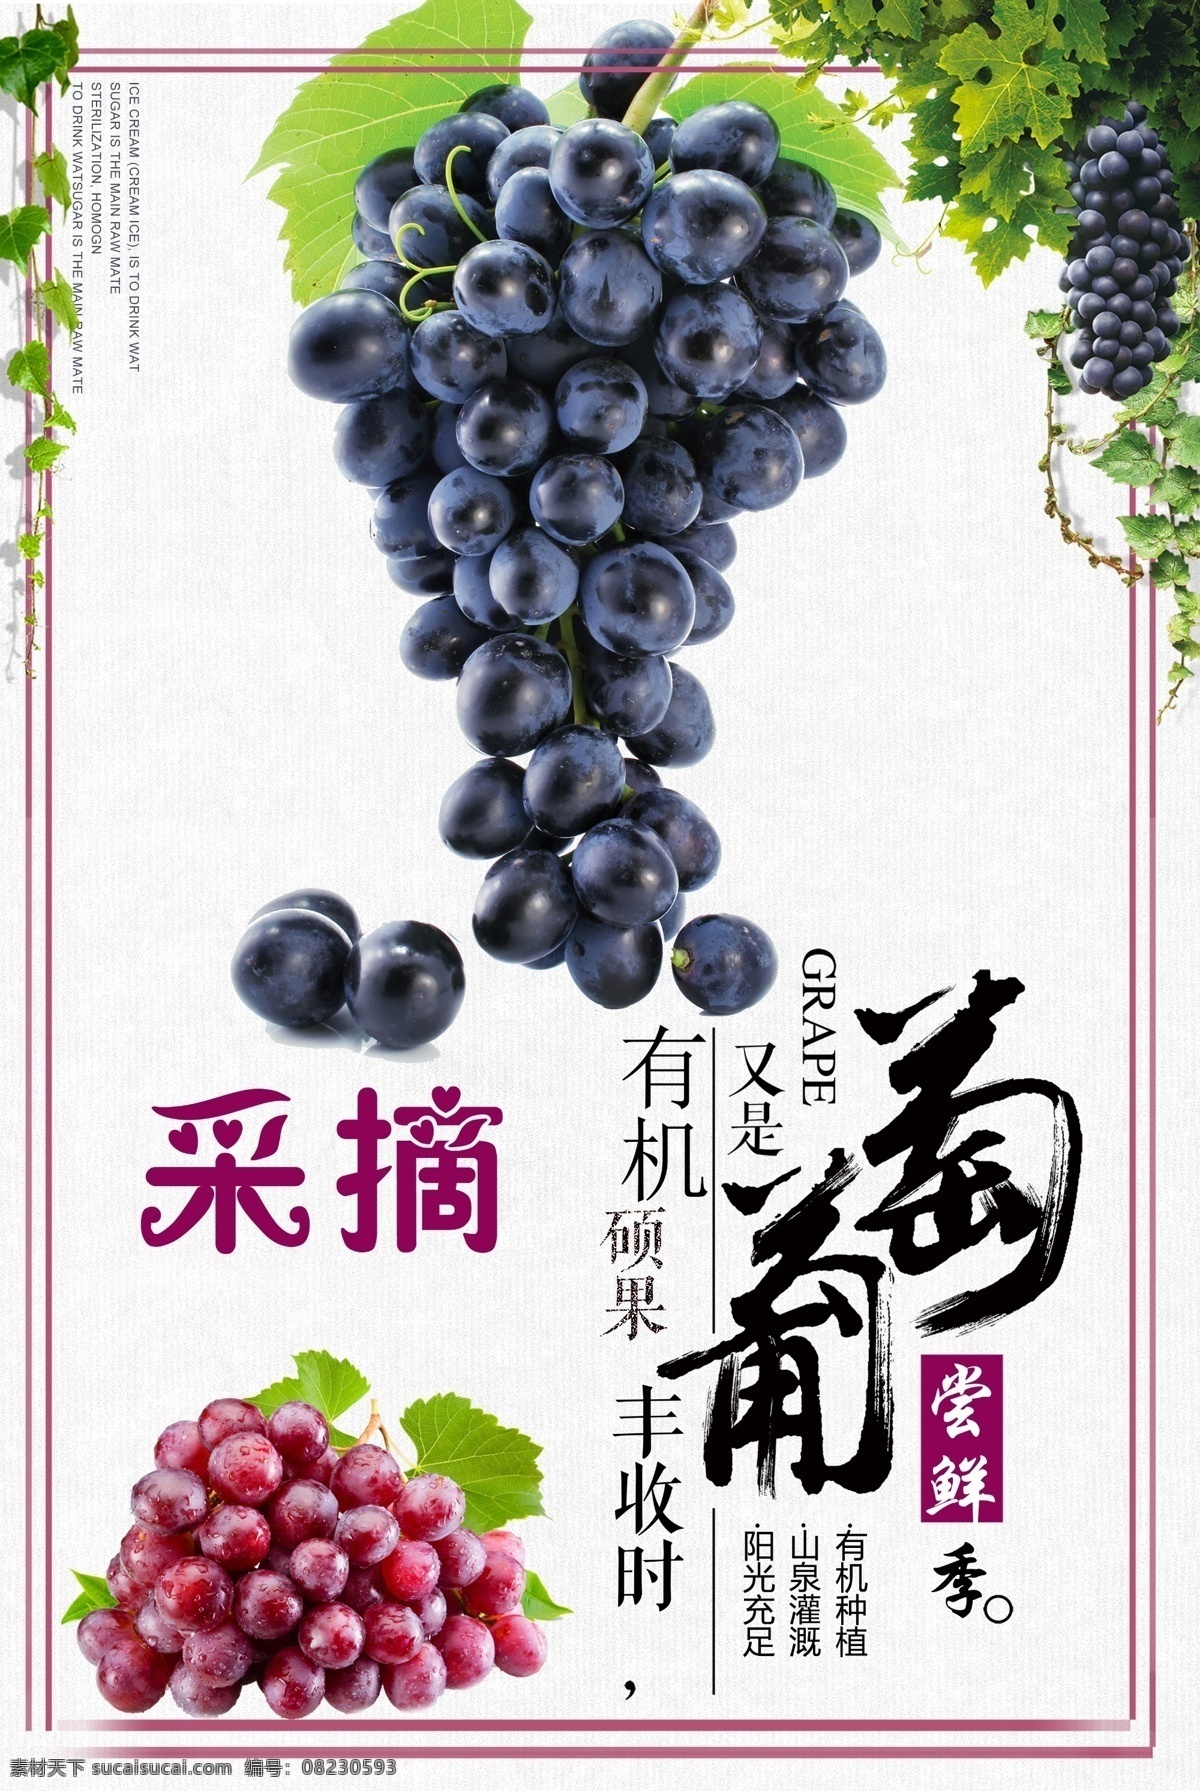 葡萄 采摘 葡萄采摘海报 紫色葡萄 采摘葡萄 葡萄采摘 有机葡萄 农产品 分层